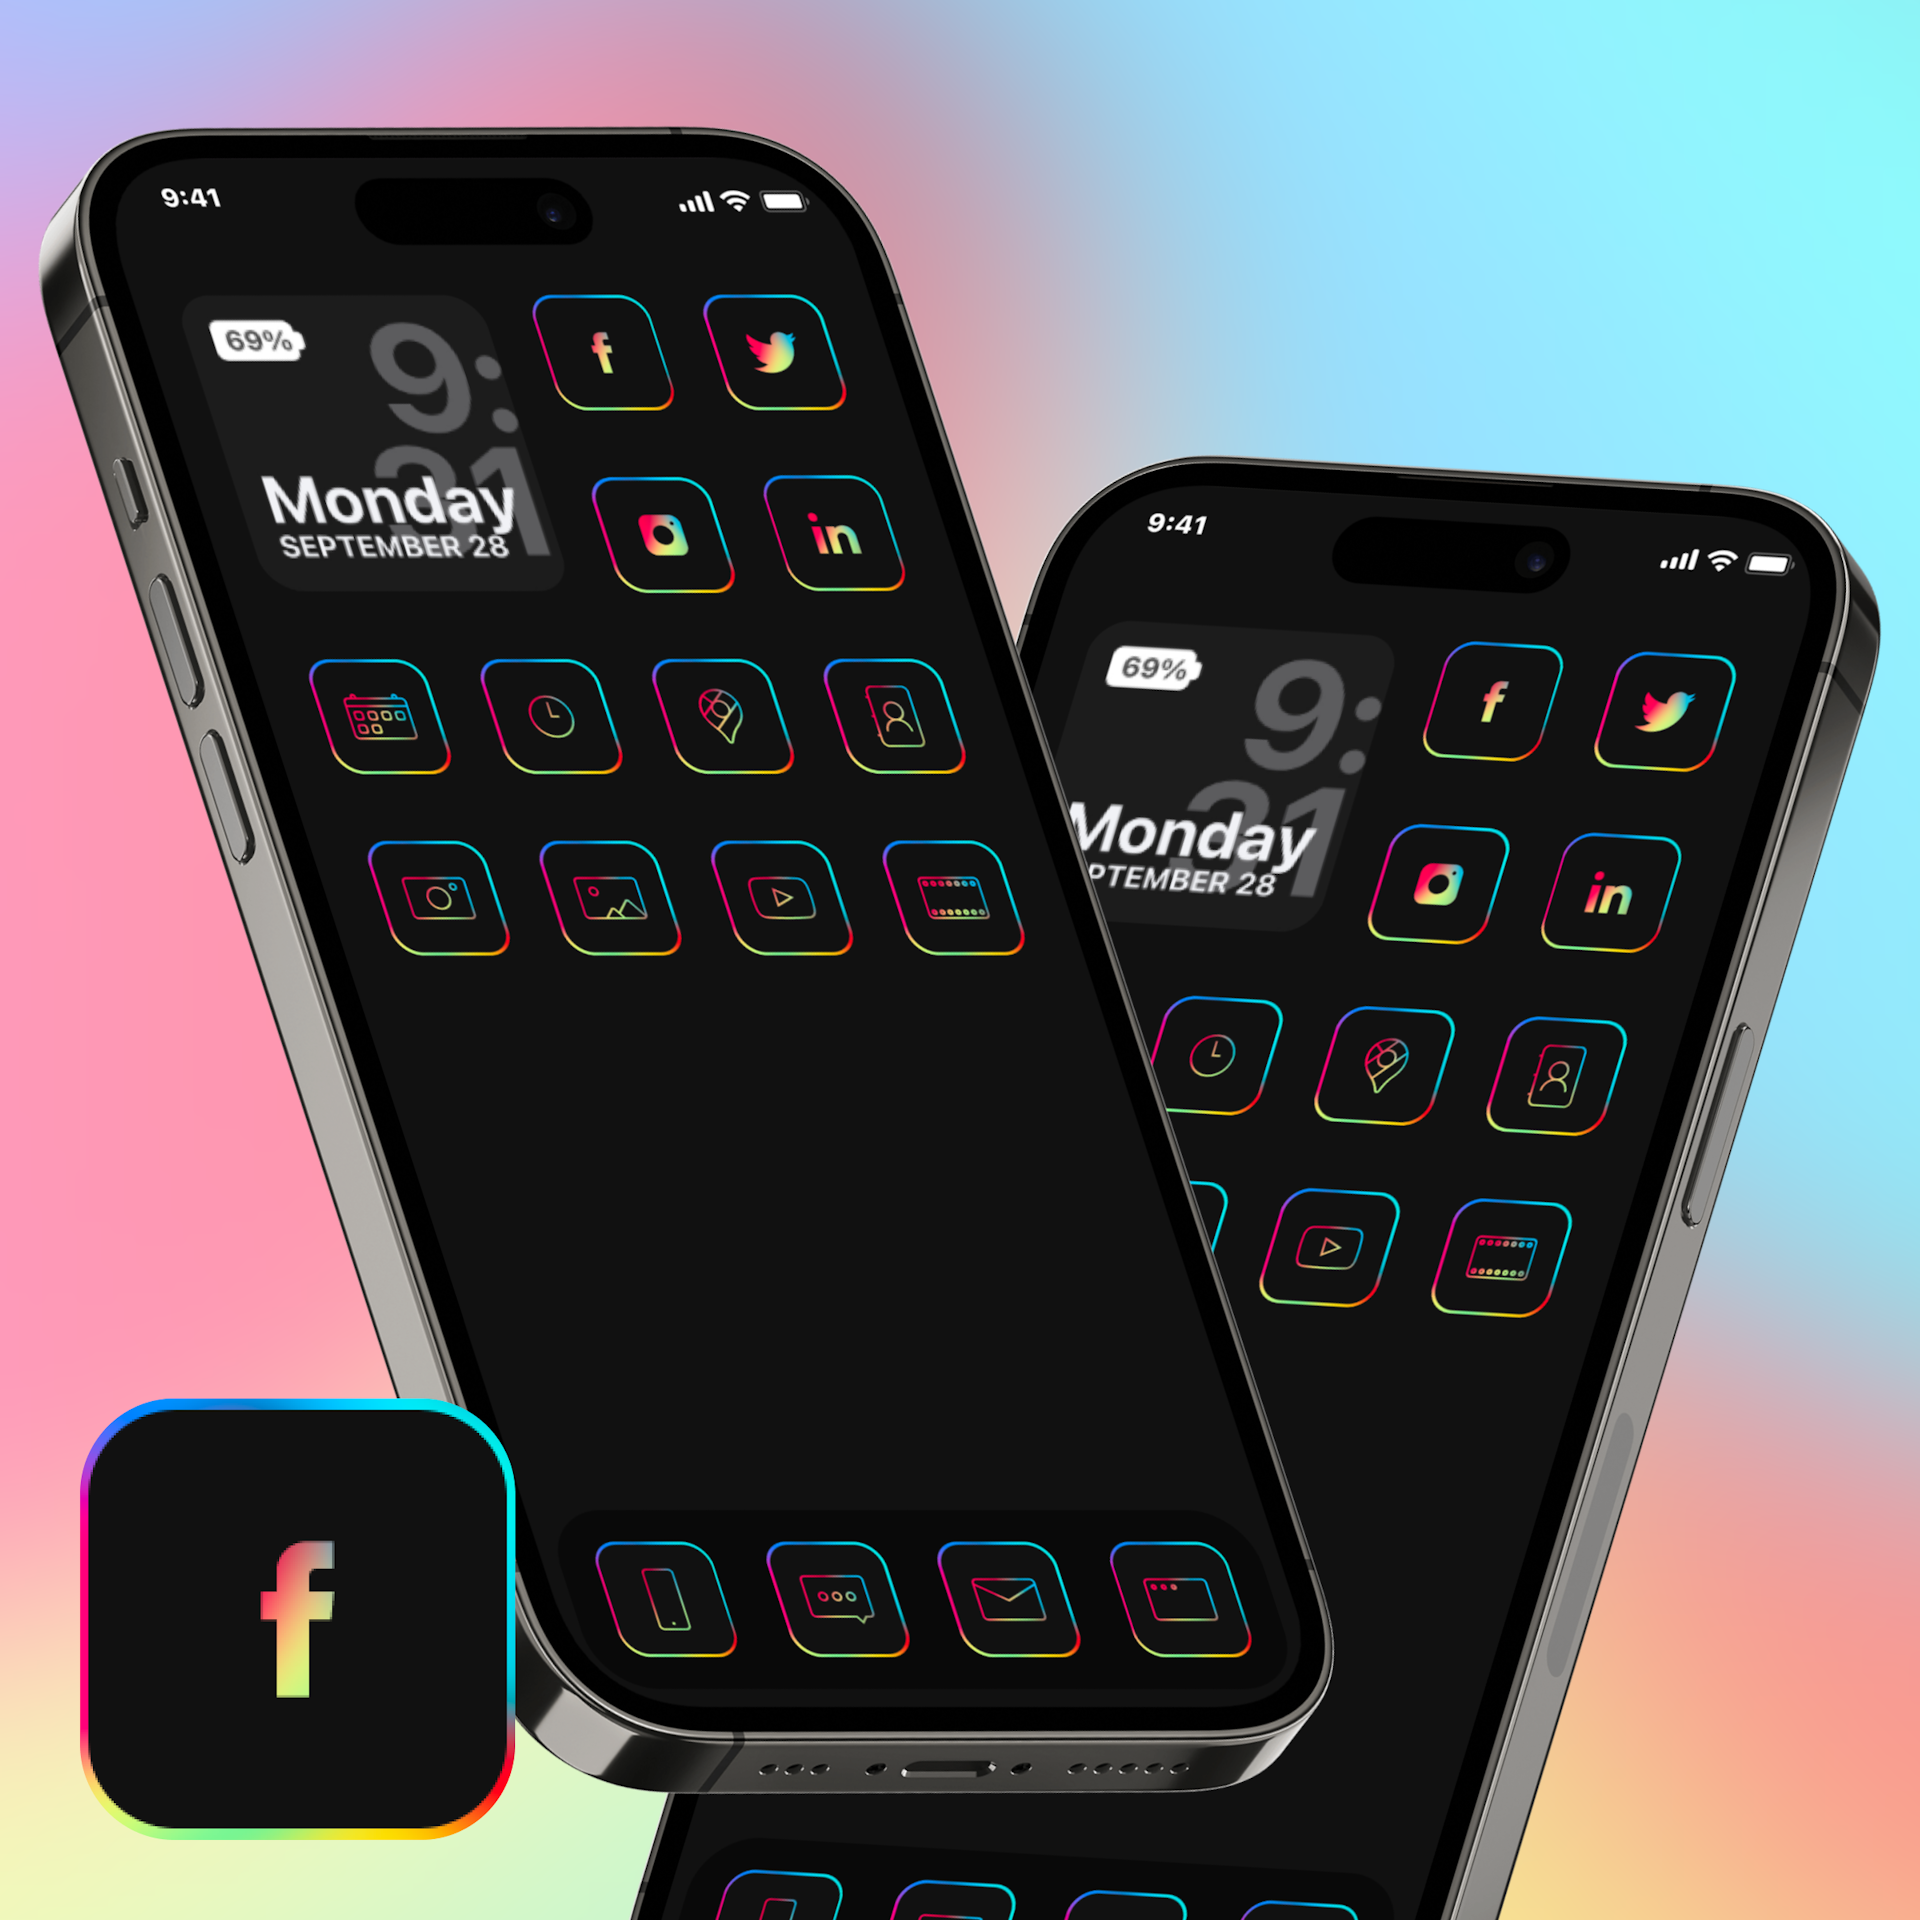 Rainbow IOS App Icons